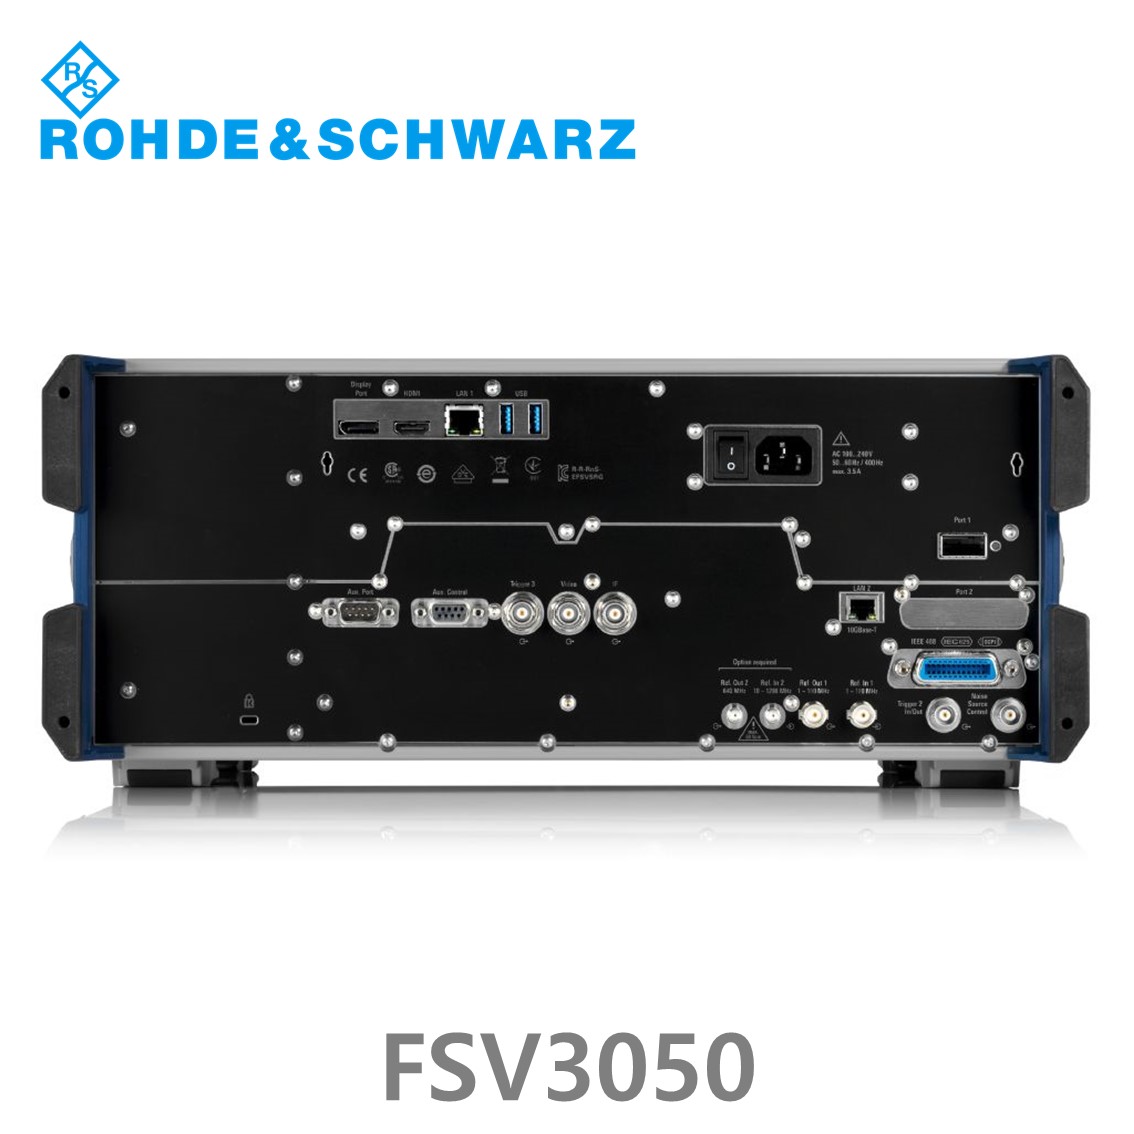 [ 로데슈바르즈 ] FSV3050  10Hz~50GHz, < –114 dBc, < –162 dBm/Hz, 200 MHz (1330.5000.50) 스펙트럼 분석기, 신호분석기